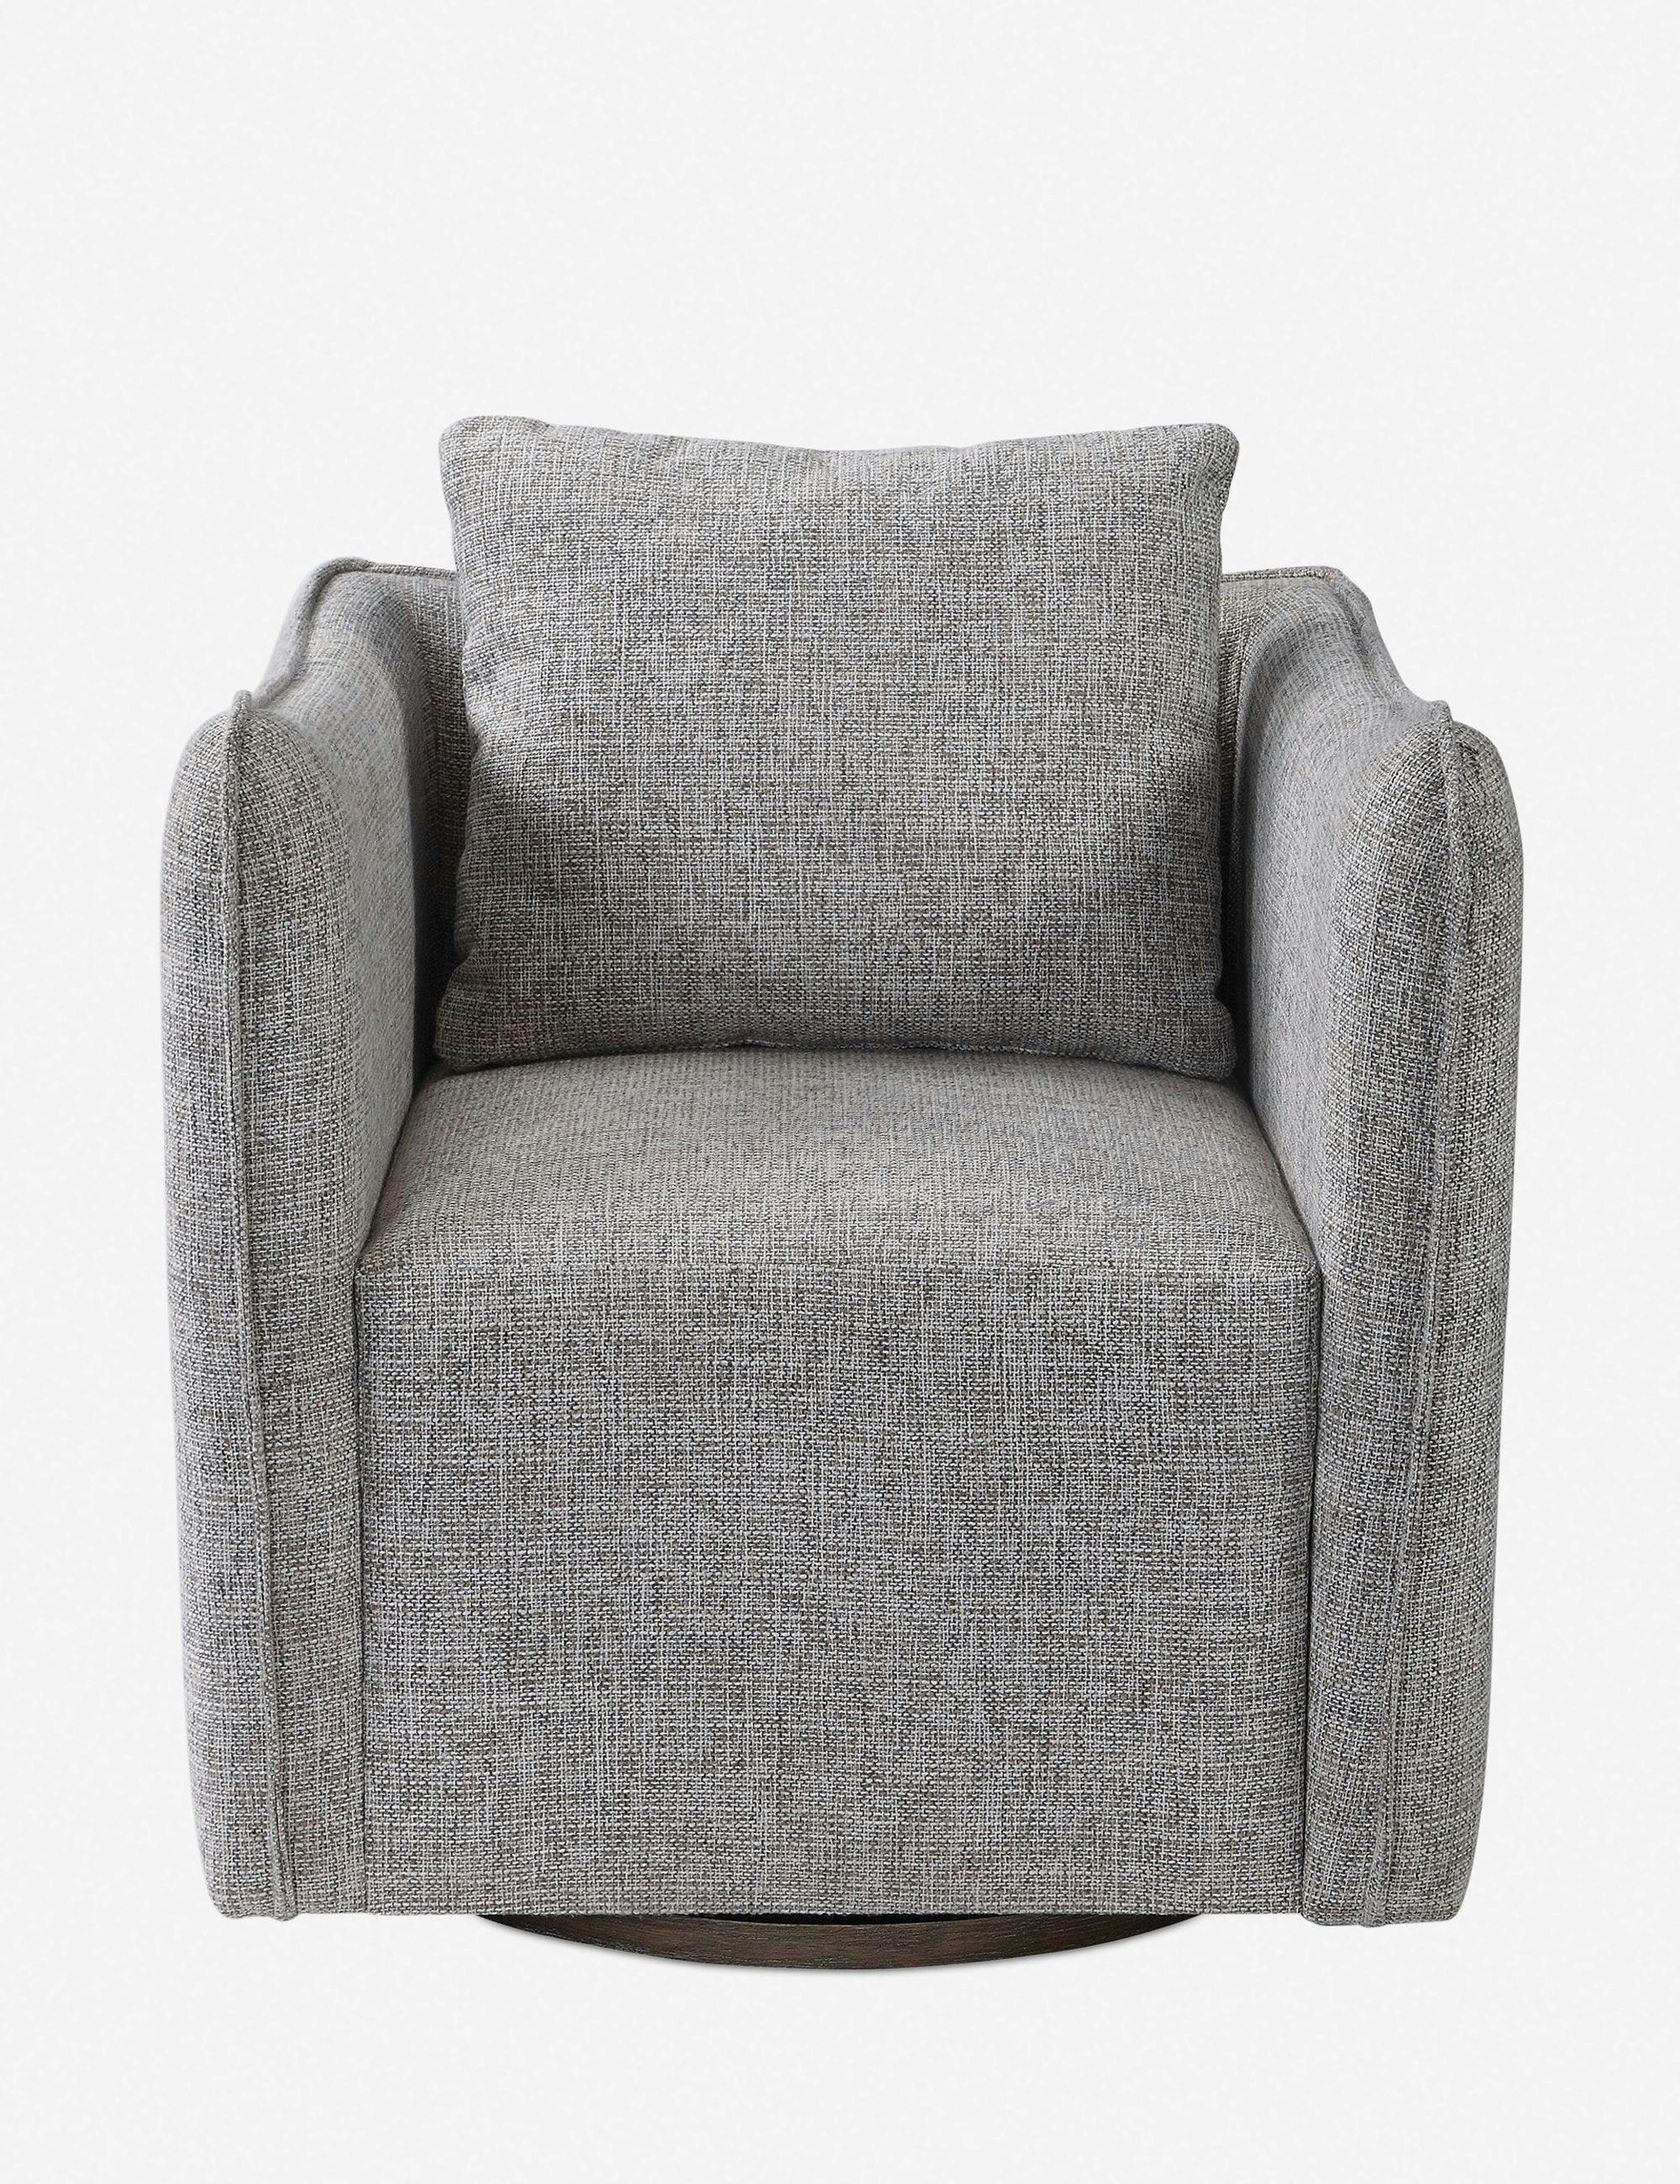 Corben Transitional Gray Linen Blend Swivel Accent Chair